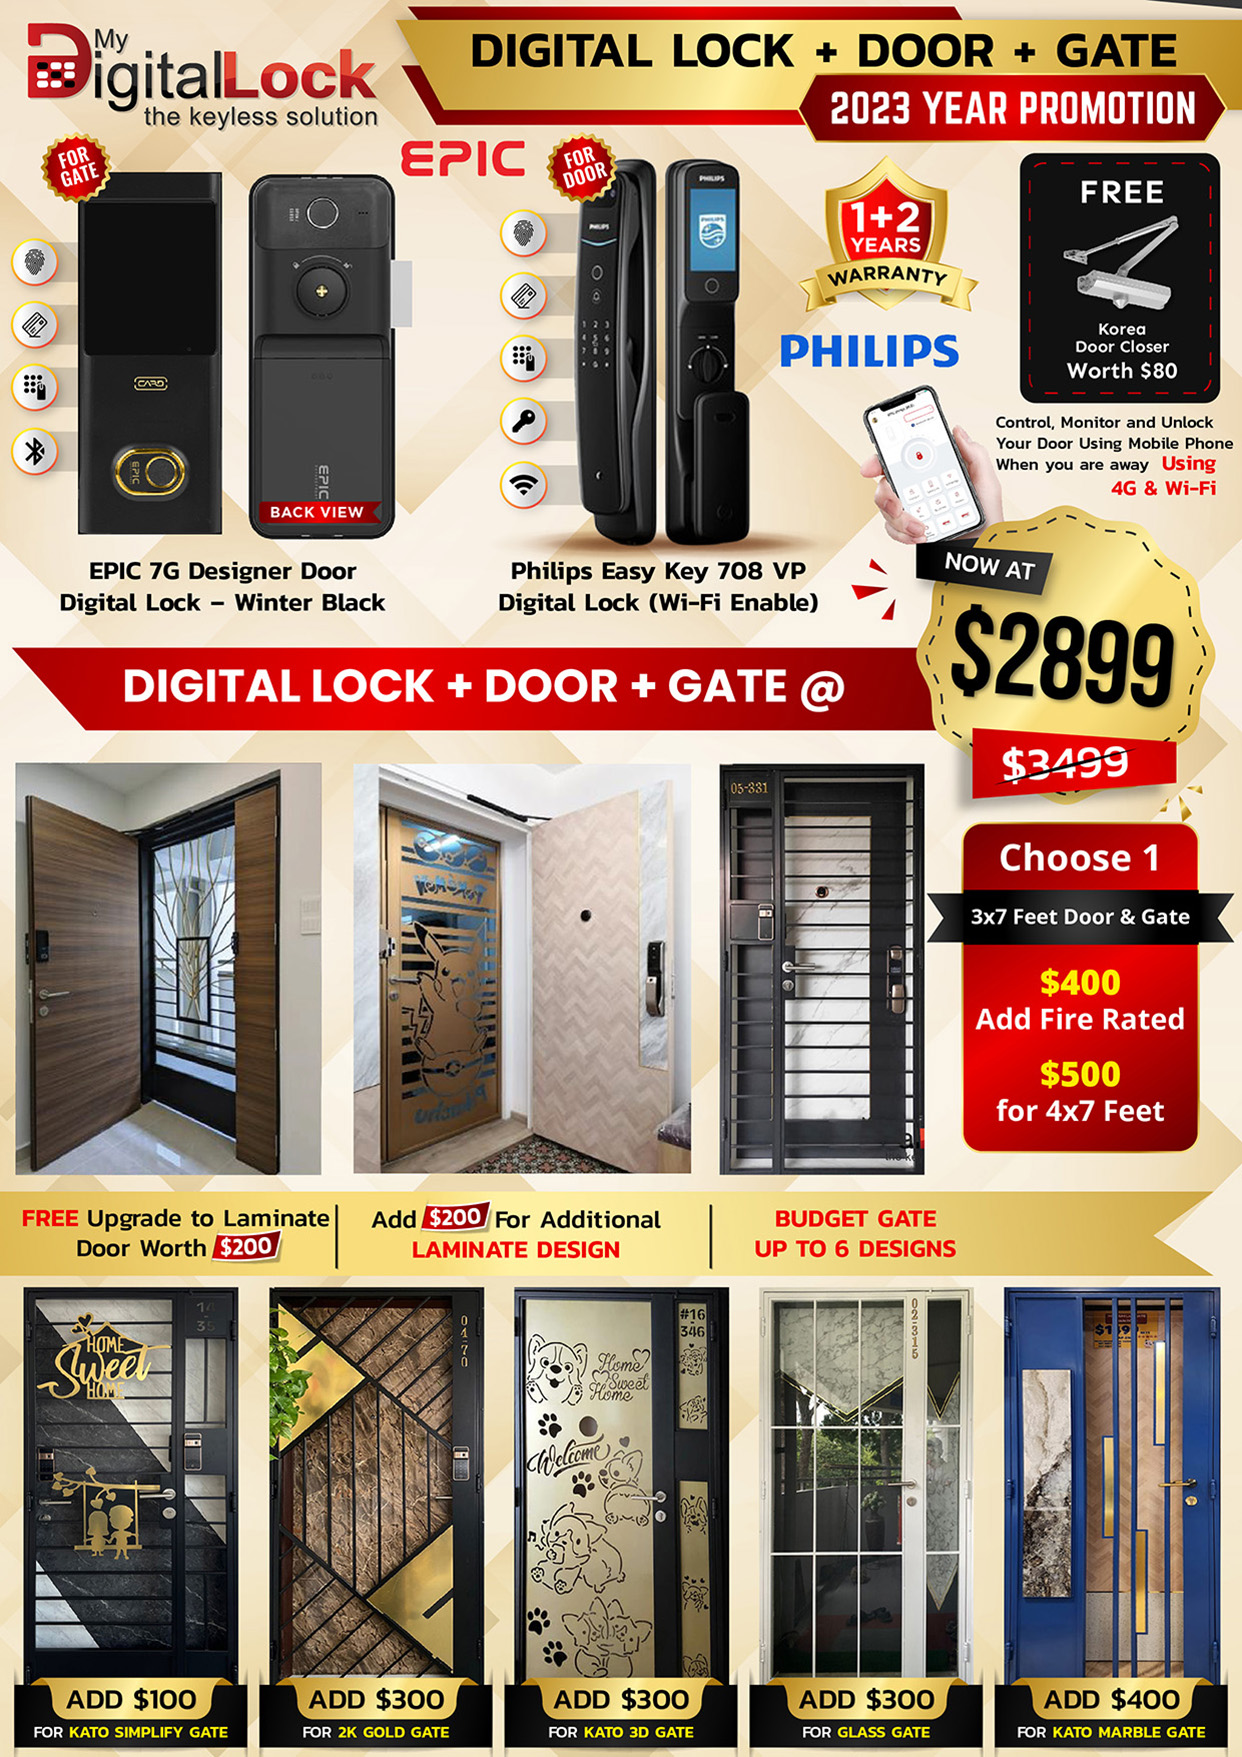 epic-7g-designer-door-digital-lock-and-philip-door-lock-promotion-banner